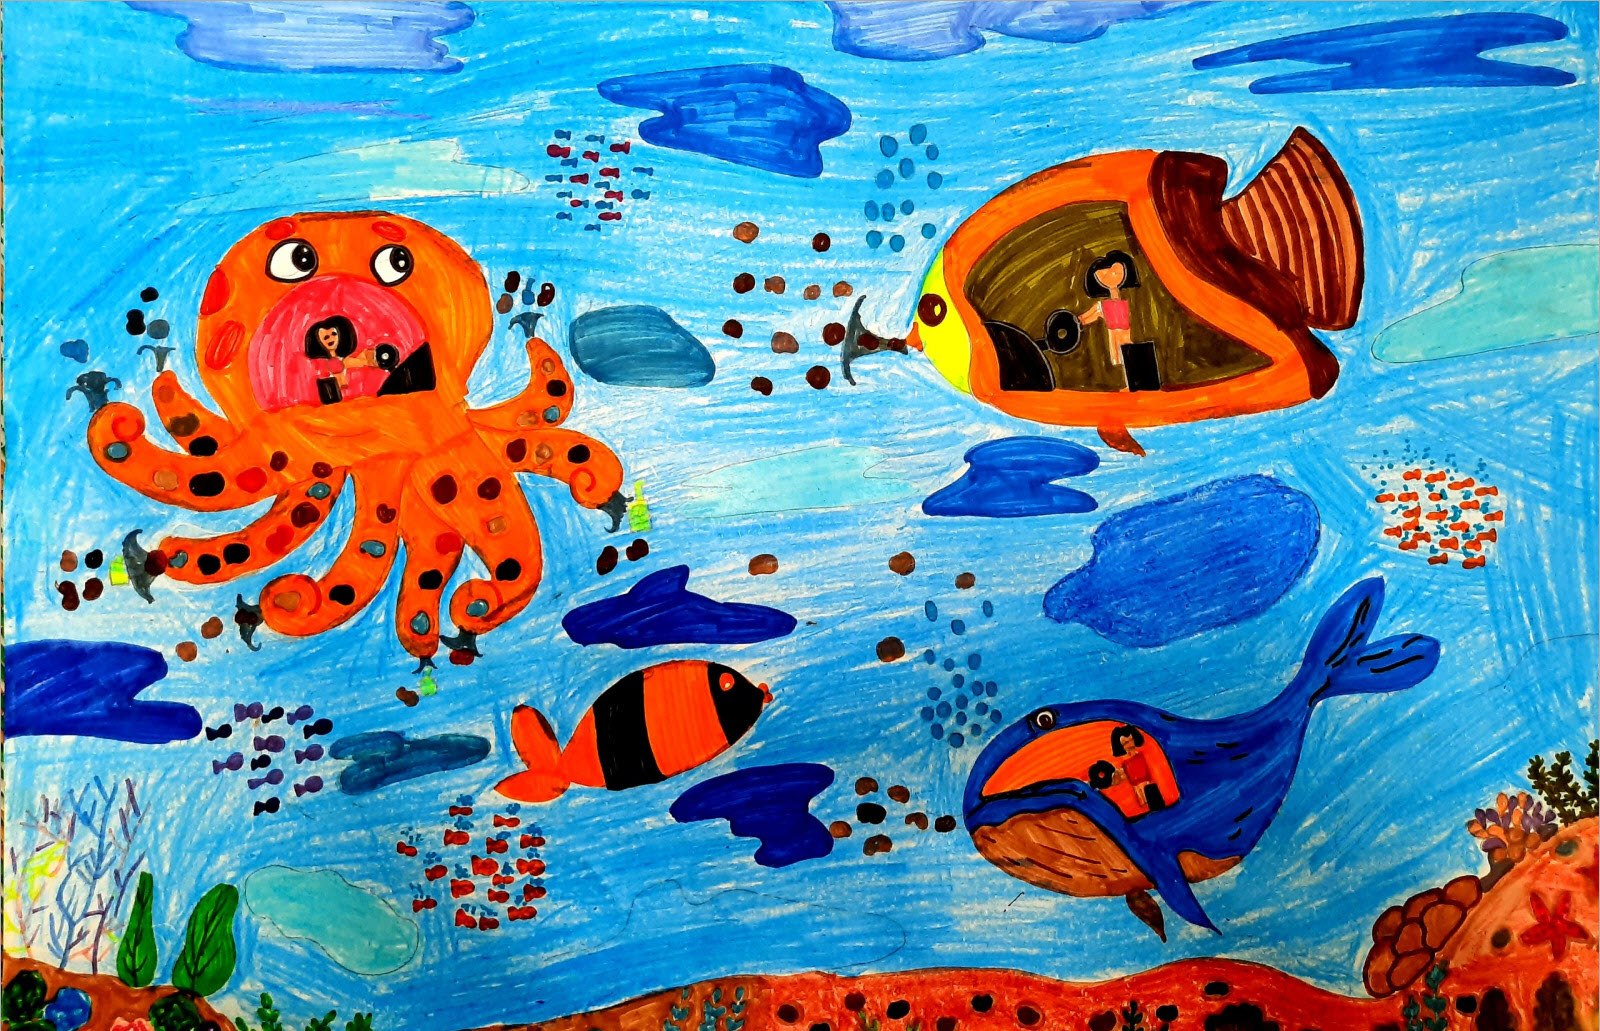 Chăm sóc nước trong tranh vẽ: Nghệ thuật và sự giáo dục cho tương lai